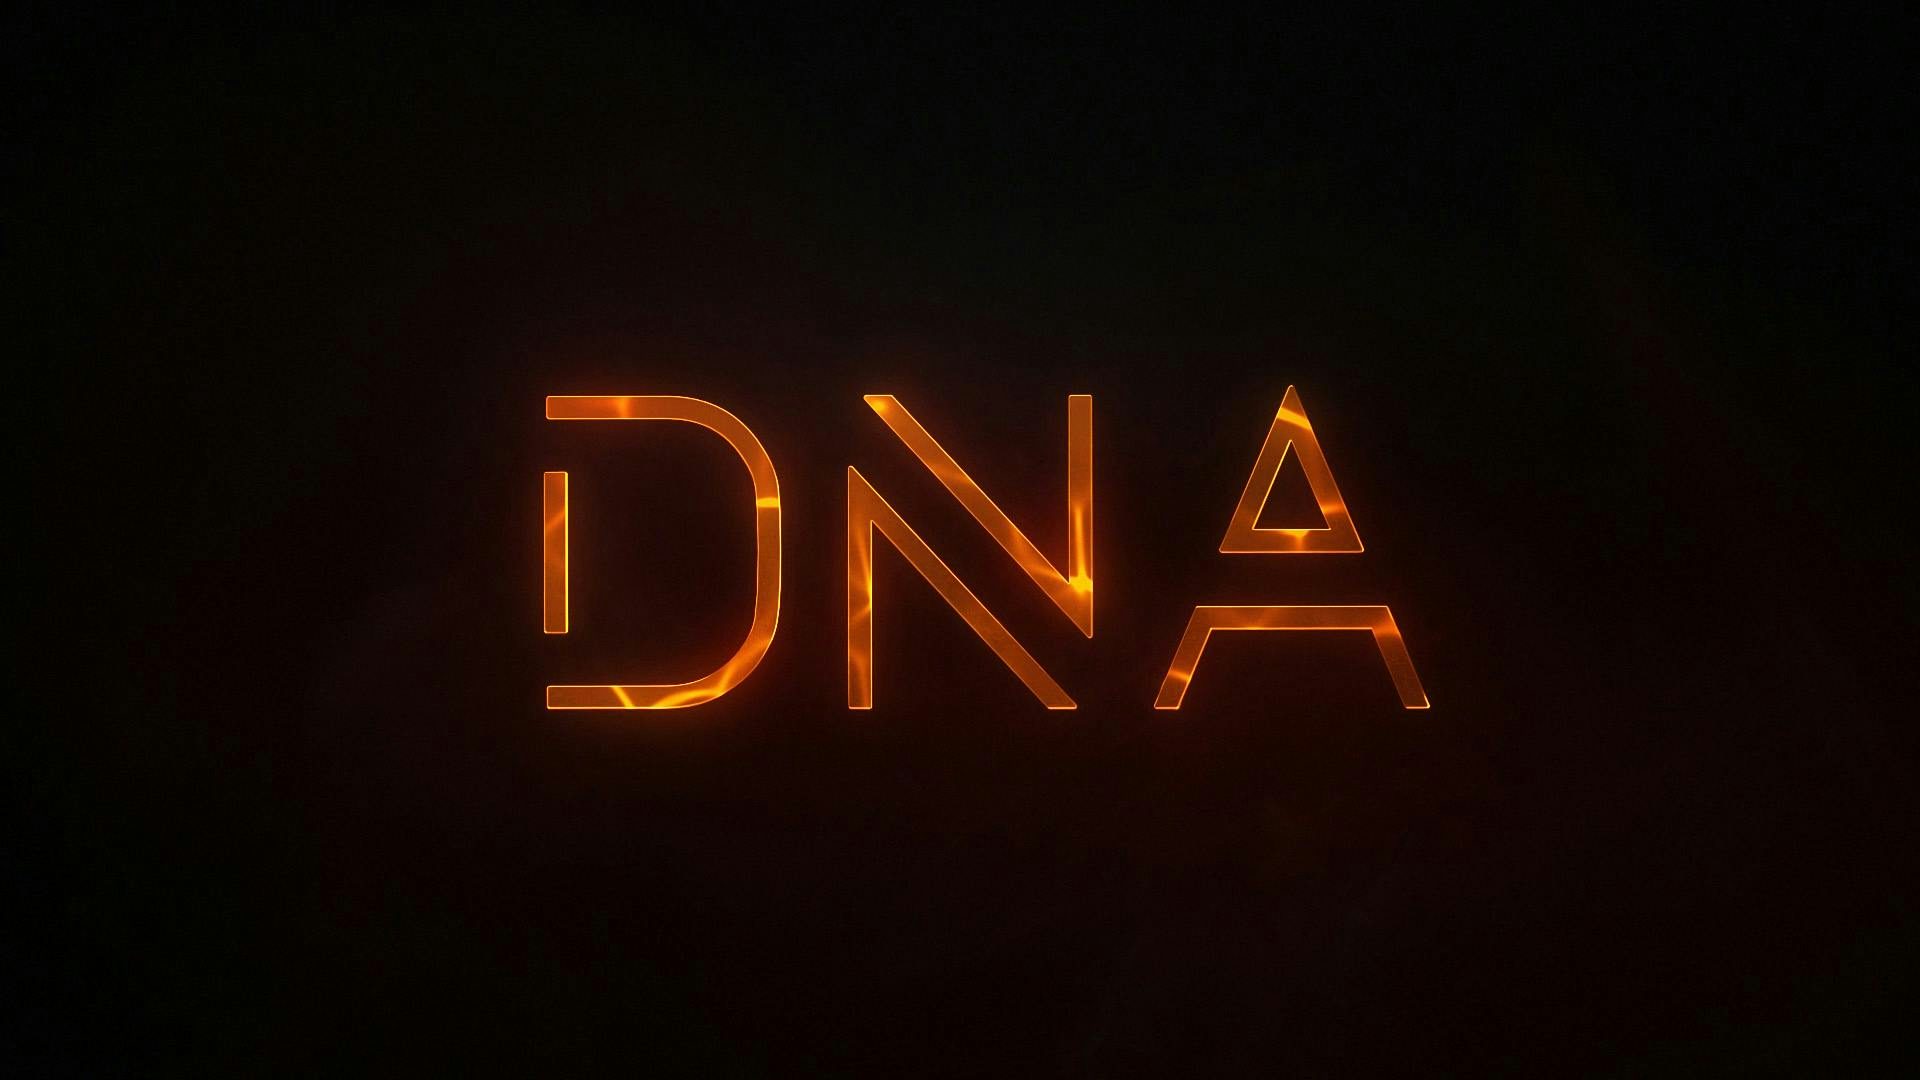 Stiga DNA logo appears